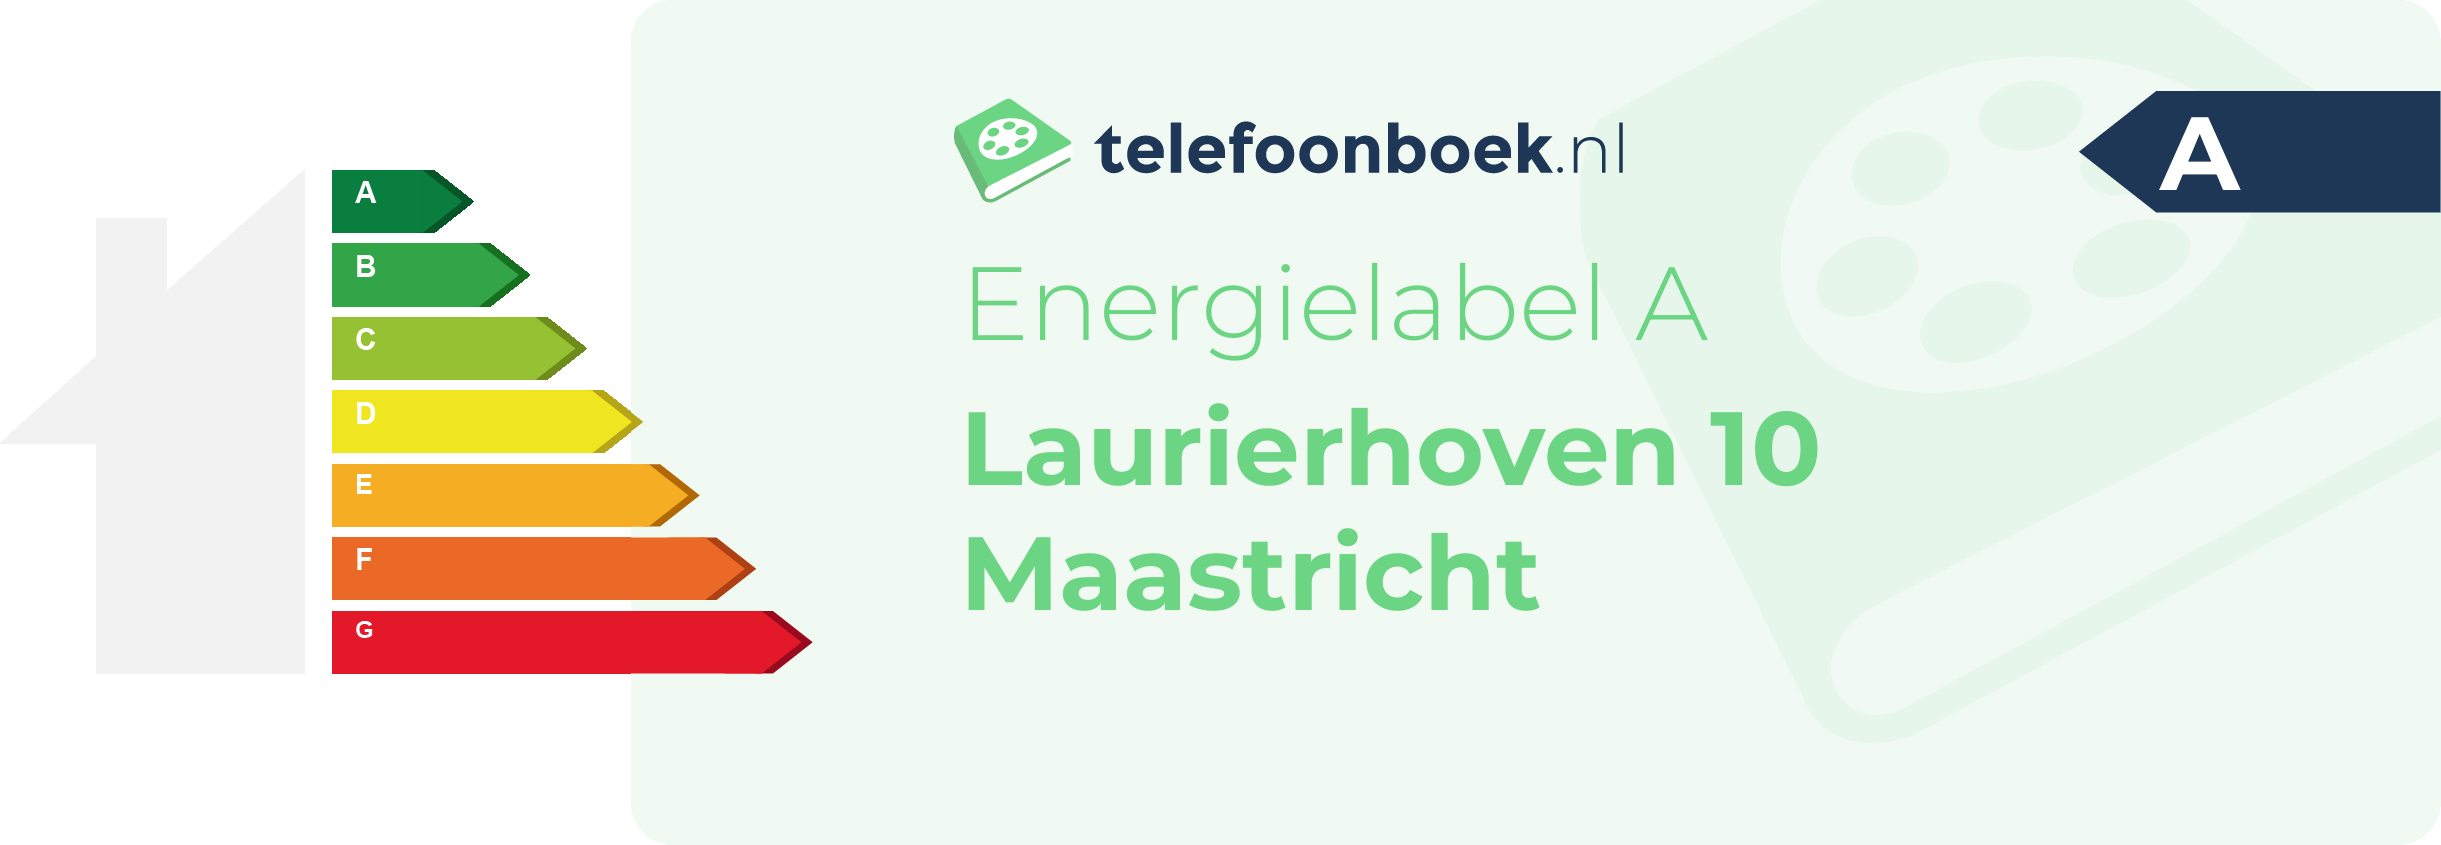 Energielabel Laurierhoven 10 Maastricht